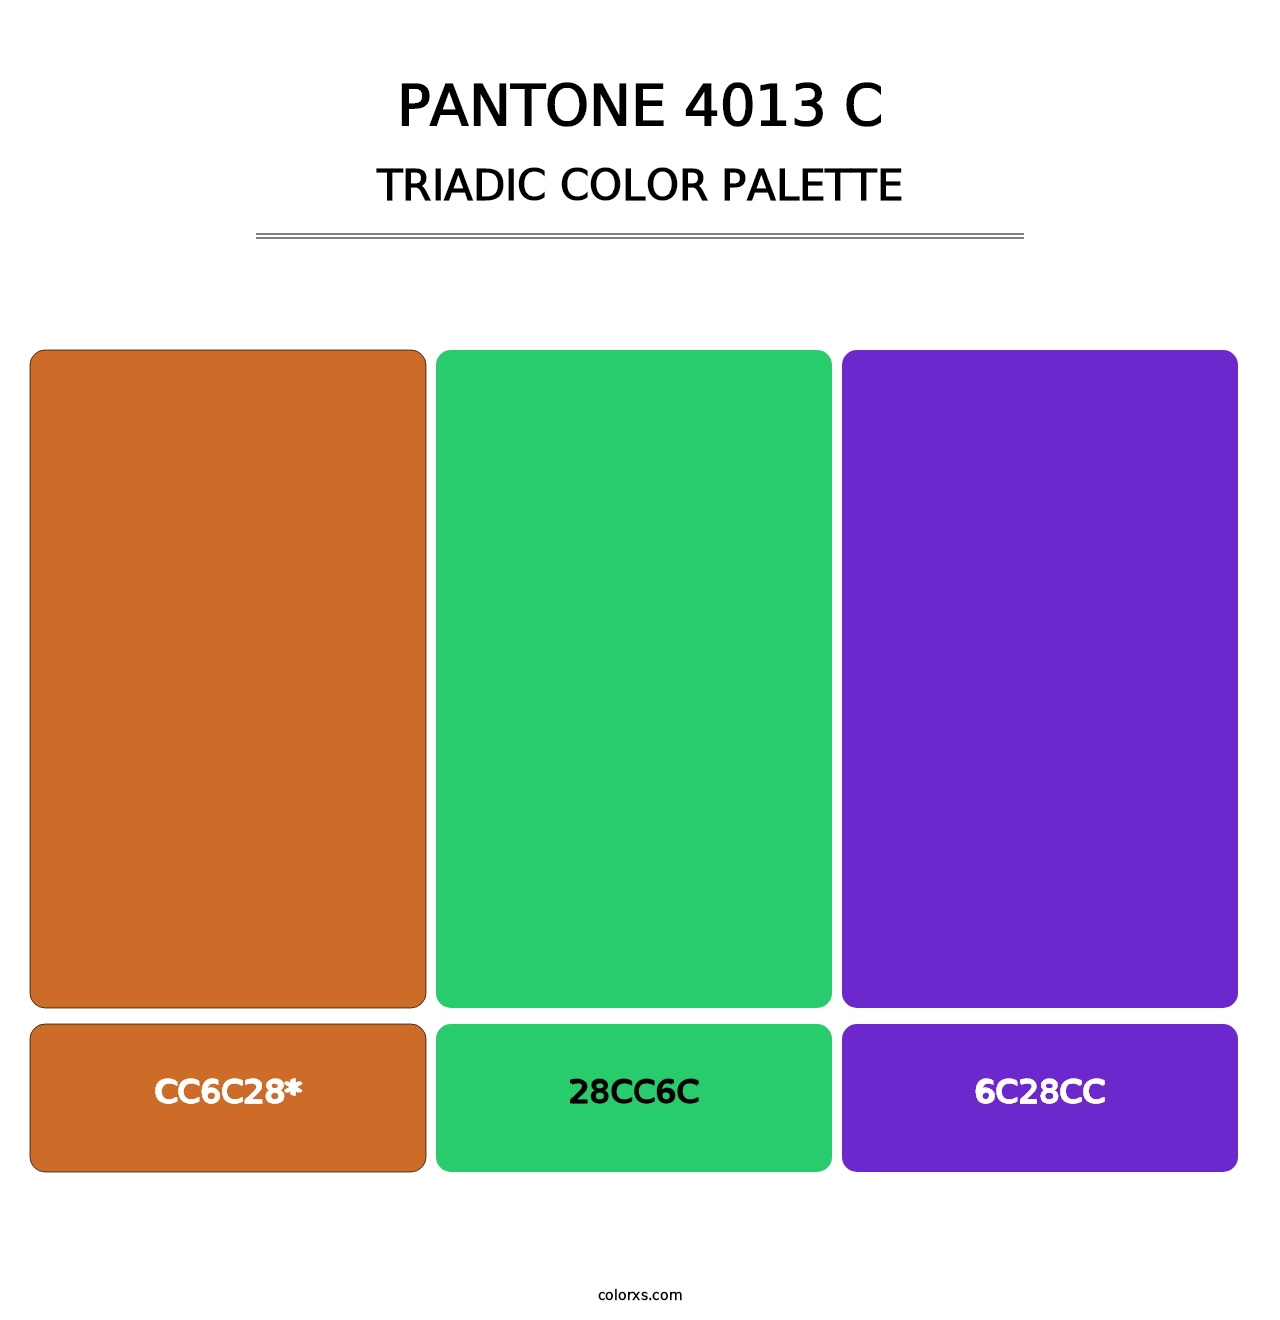 PANTONE 4013 C - Triadic Color Palette